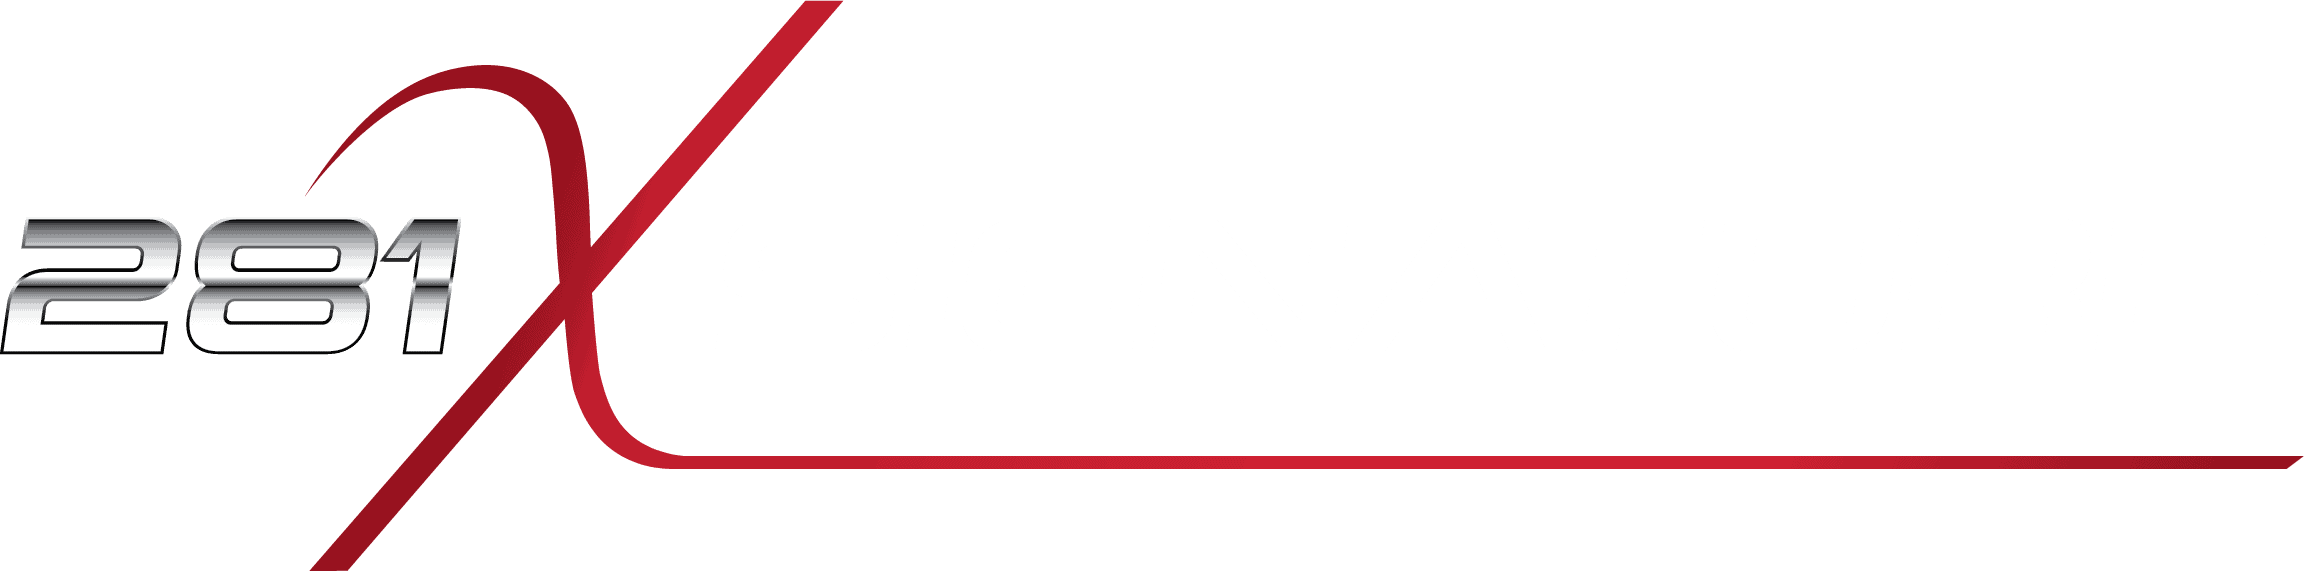 281-x-signature-logo